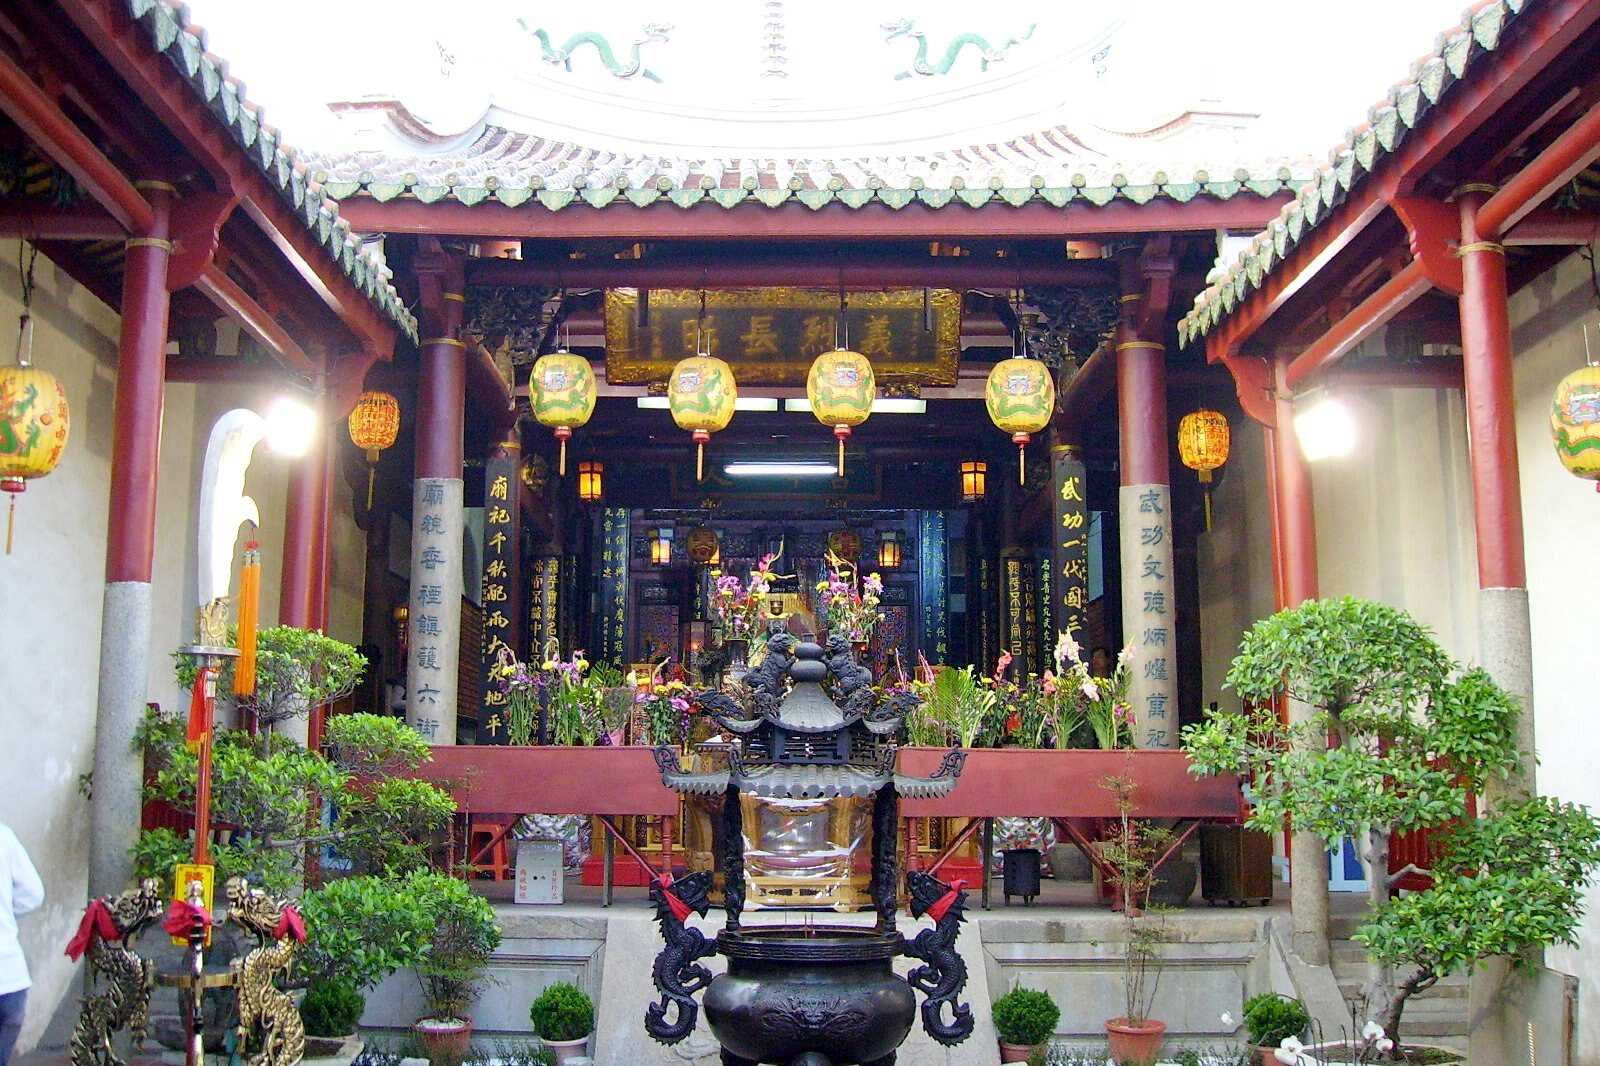 Guan Gong Temple